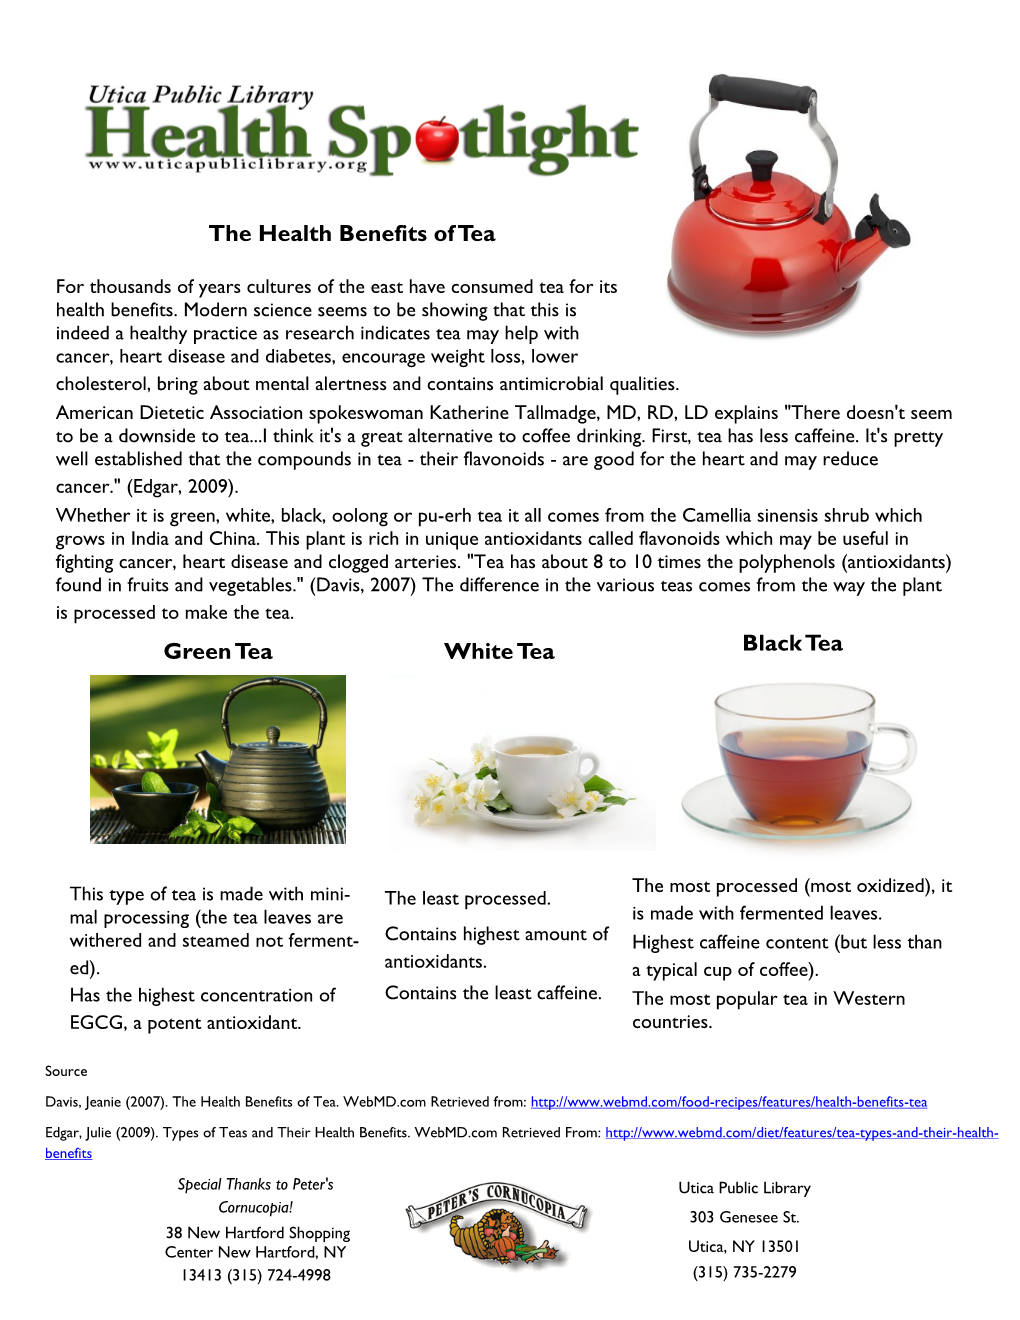 The Health Benefits of Tea Green Tea White Tea Black